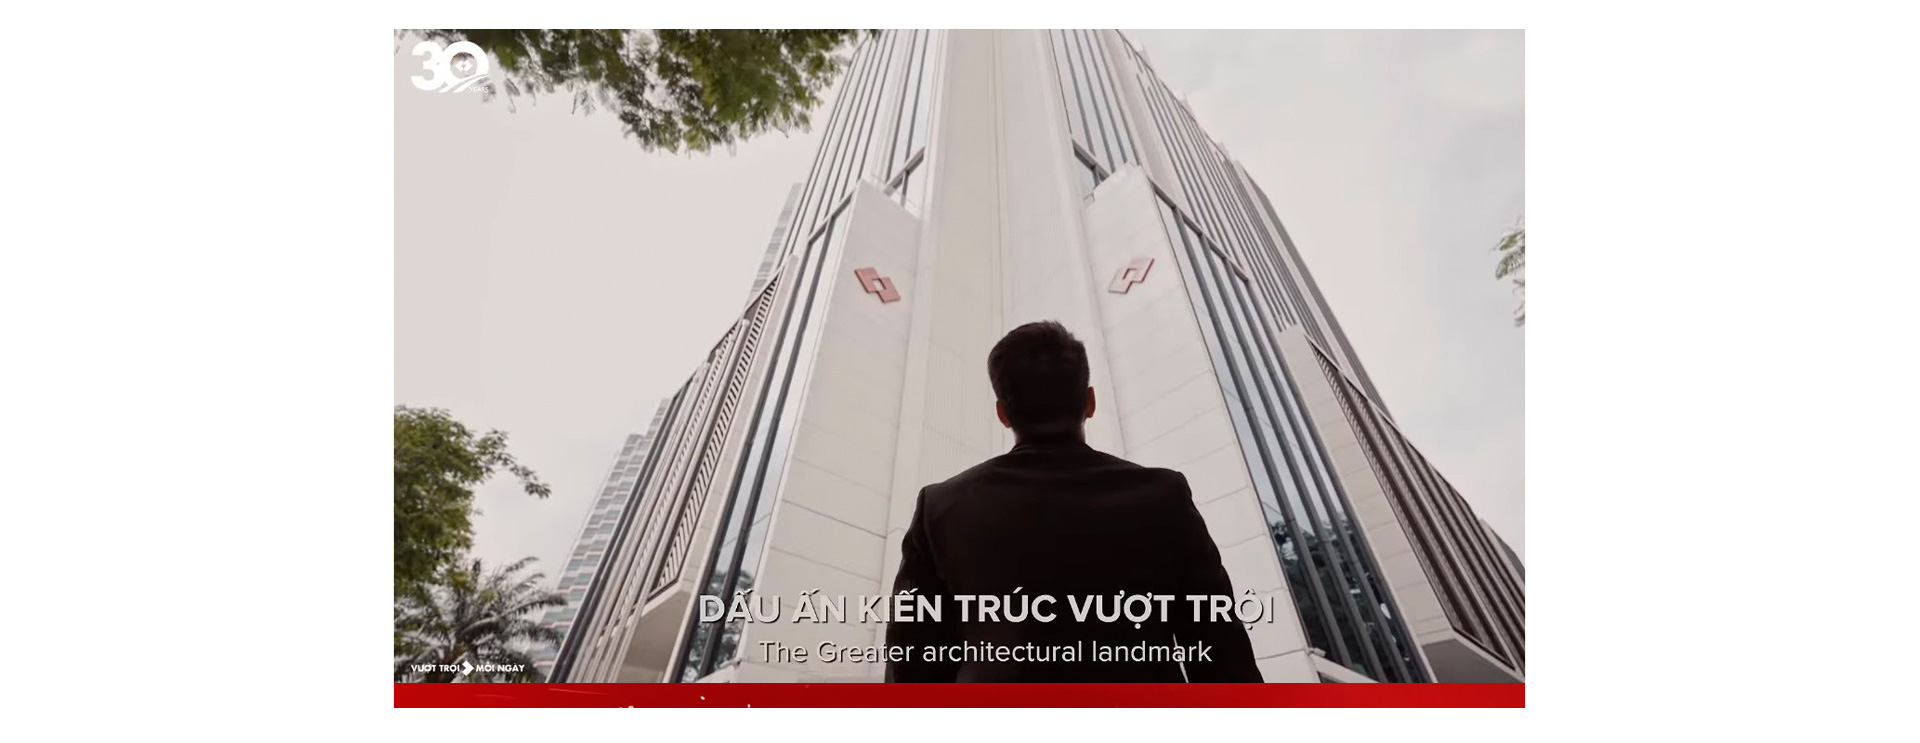 Khai trương 2 tòa nhà Techcombank tại Hà Nội và TP.HCM: Tương lai vượt trội trên nền di sản - Ảnh 1.